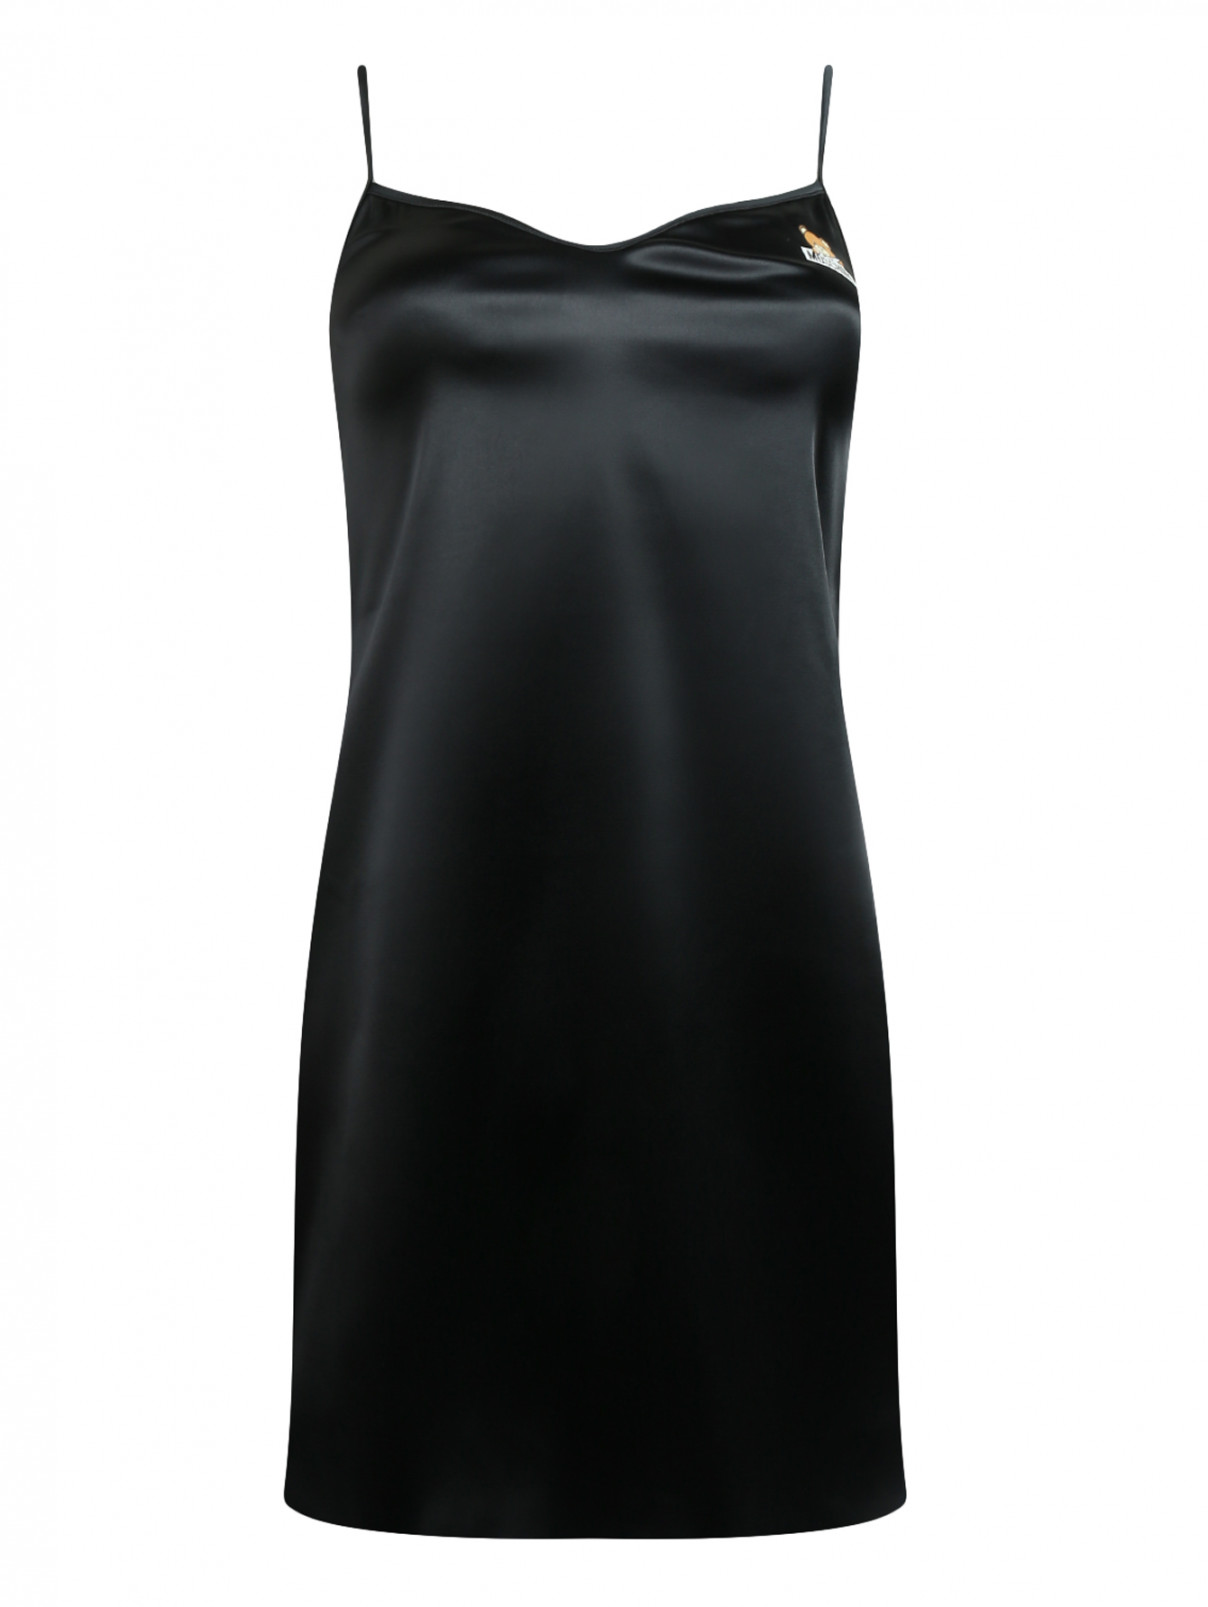 Комбинация на бретелях Moschino Underwear  –  Общий вид  – Цвет:  Черный